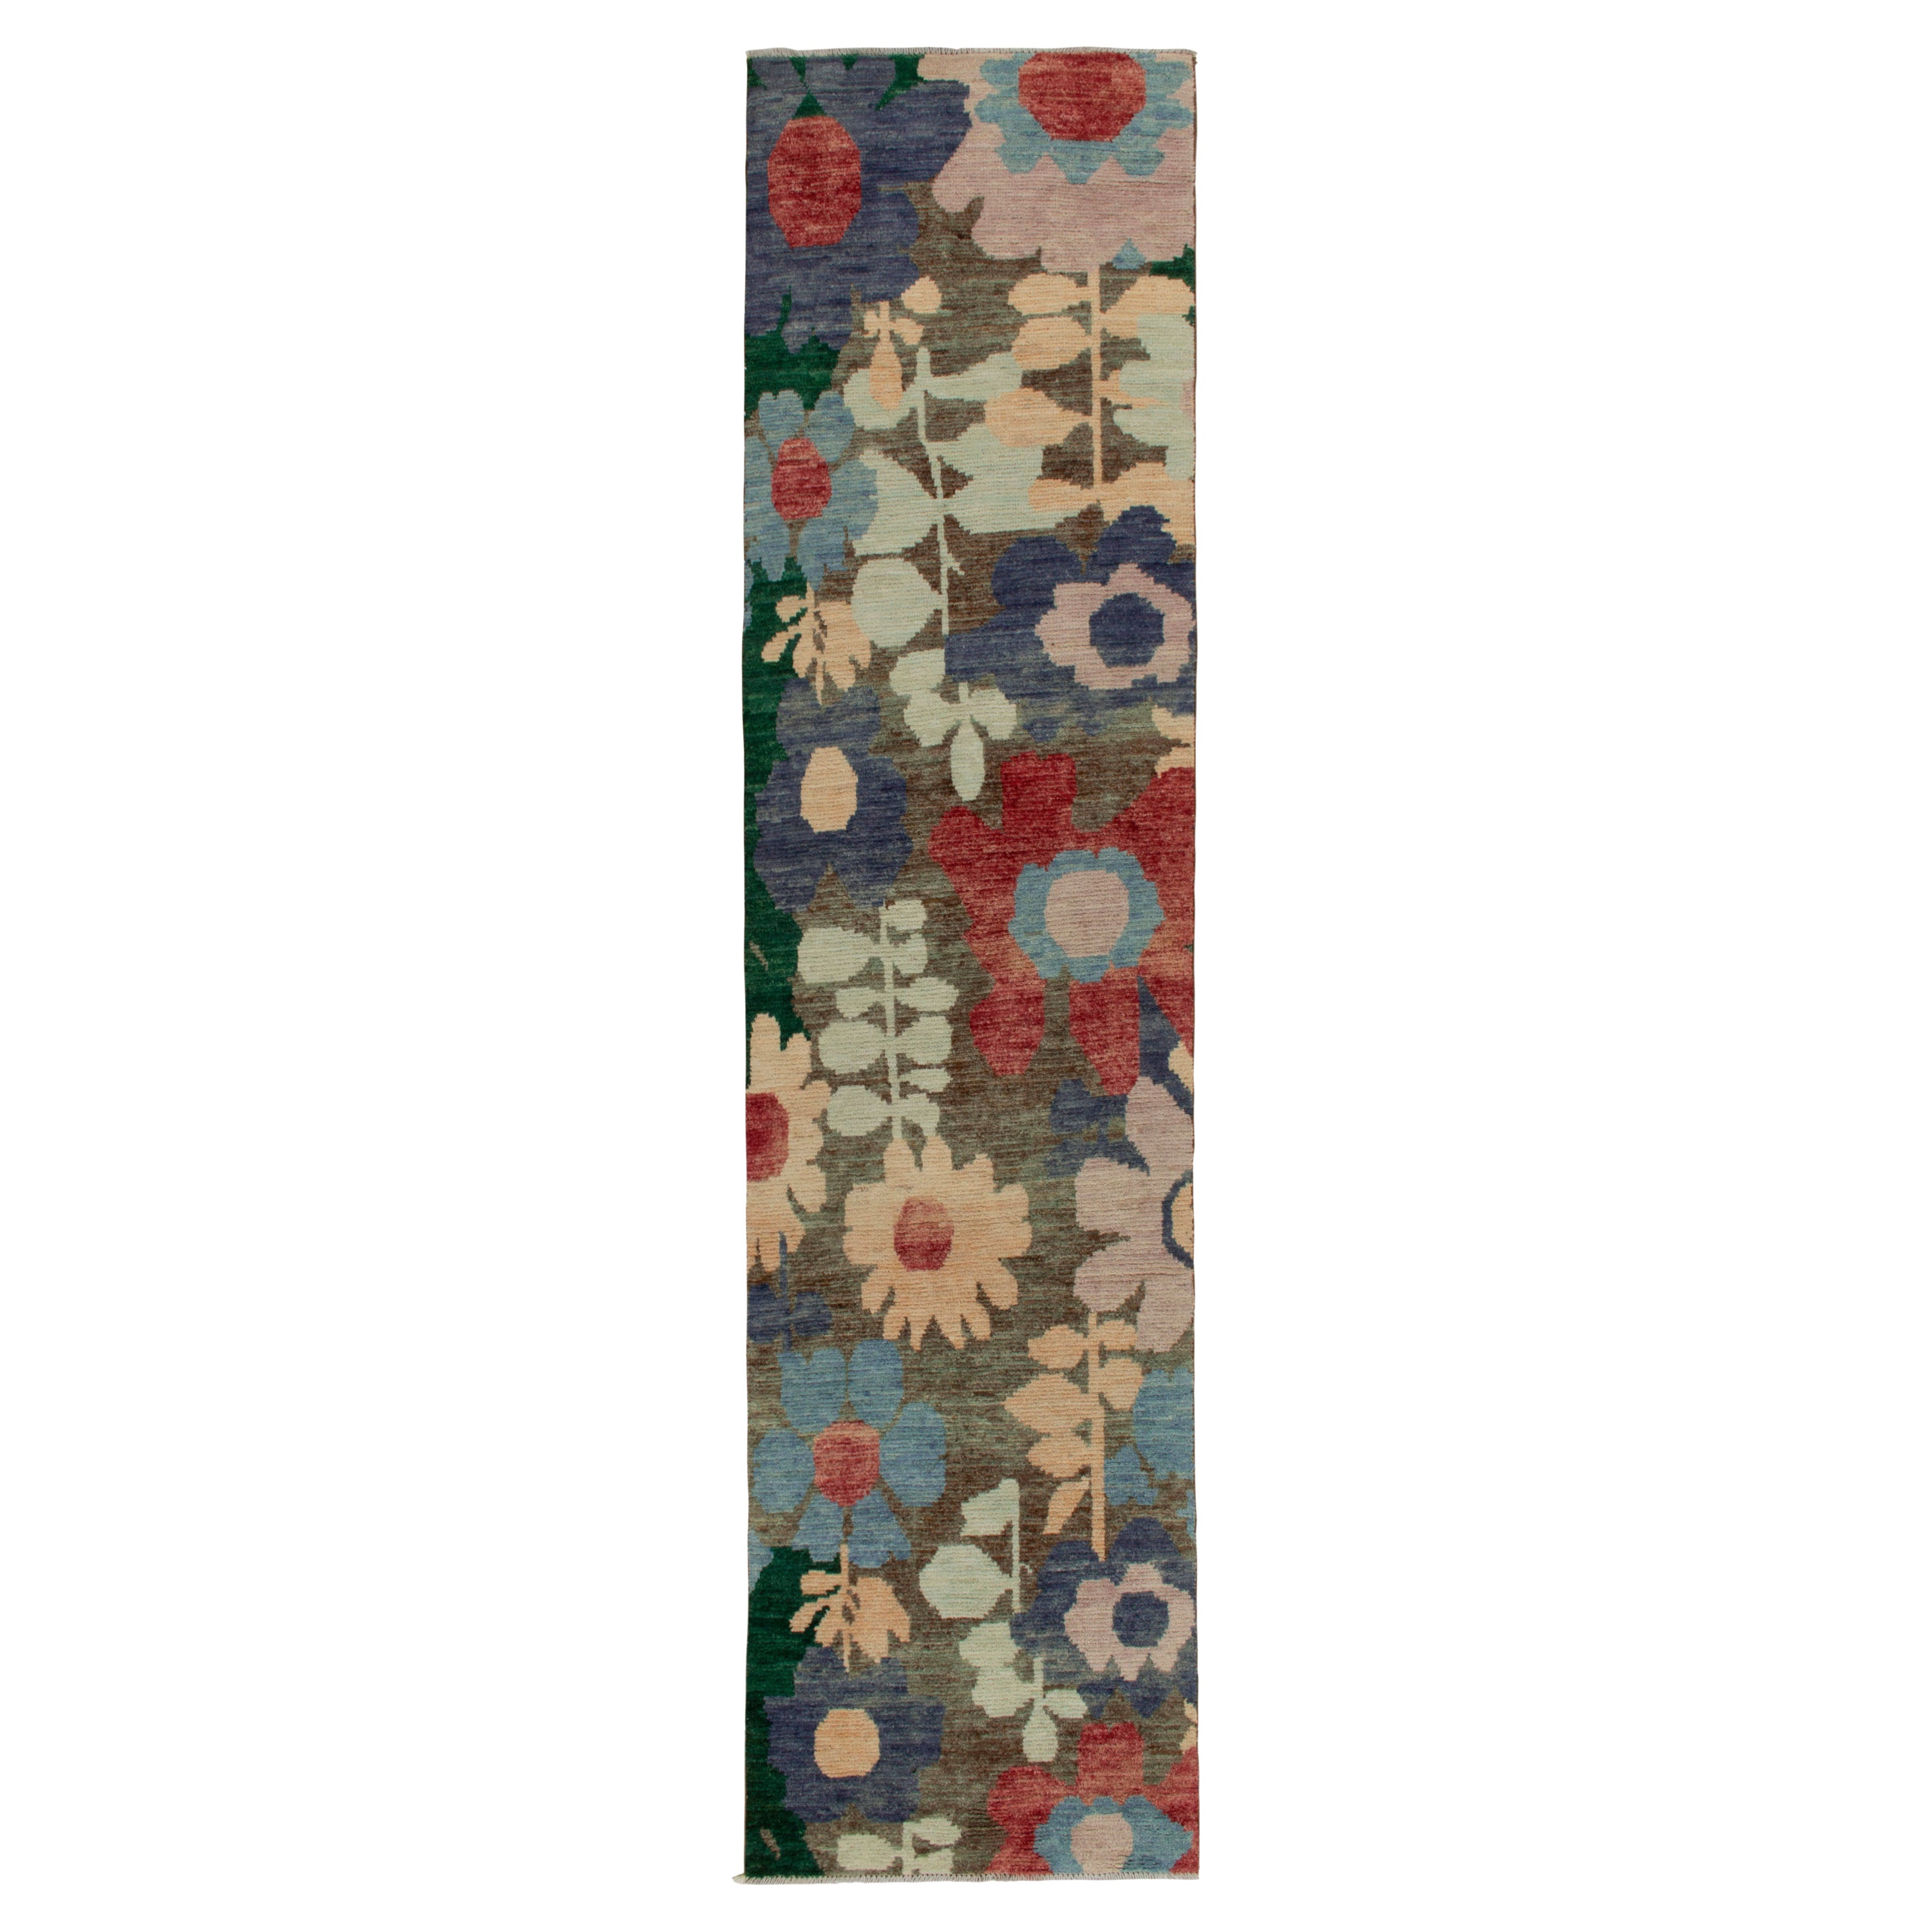 Rug & Kilim's Contemporary Läufer in Multicolor Floral Muster